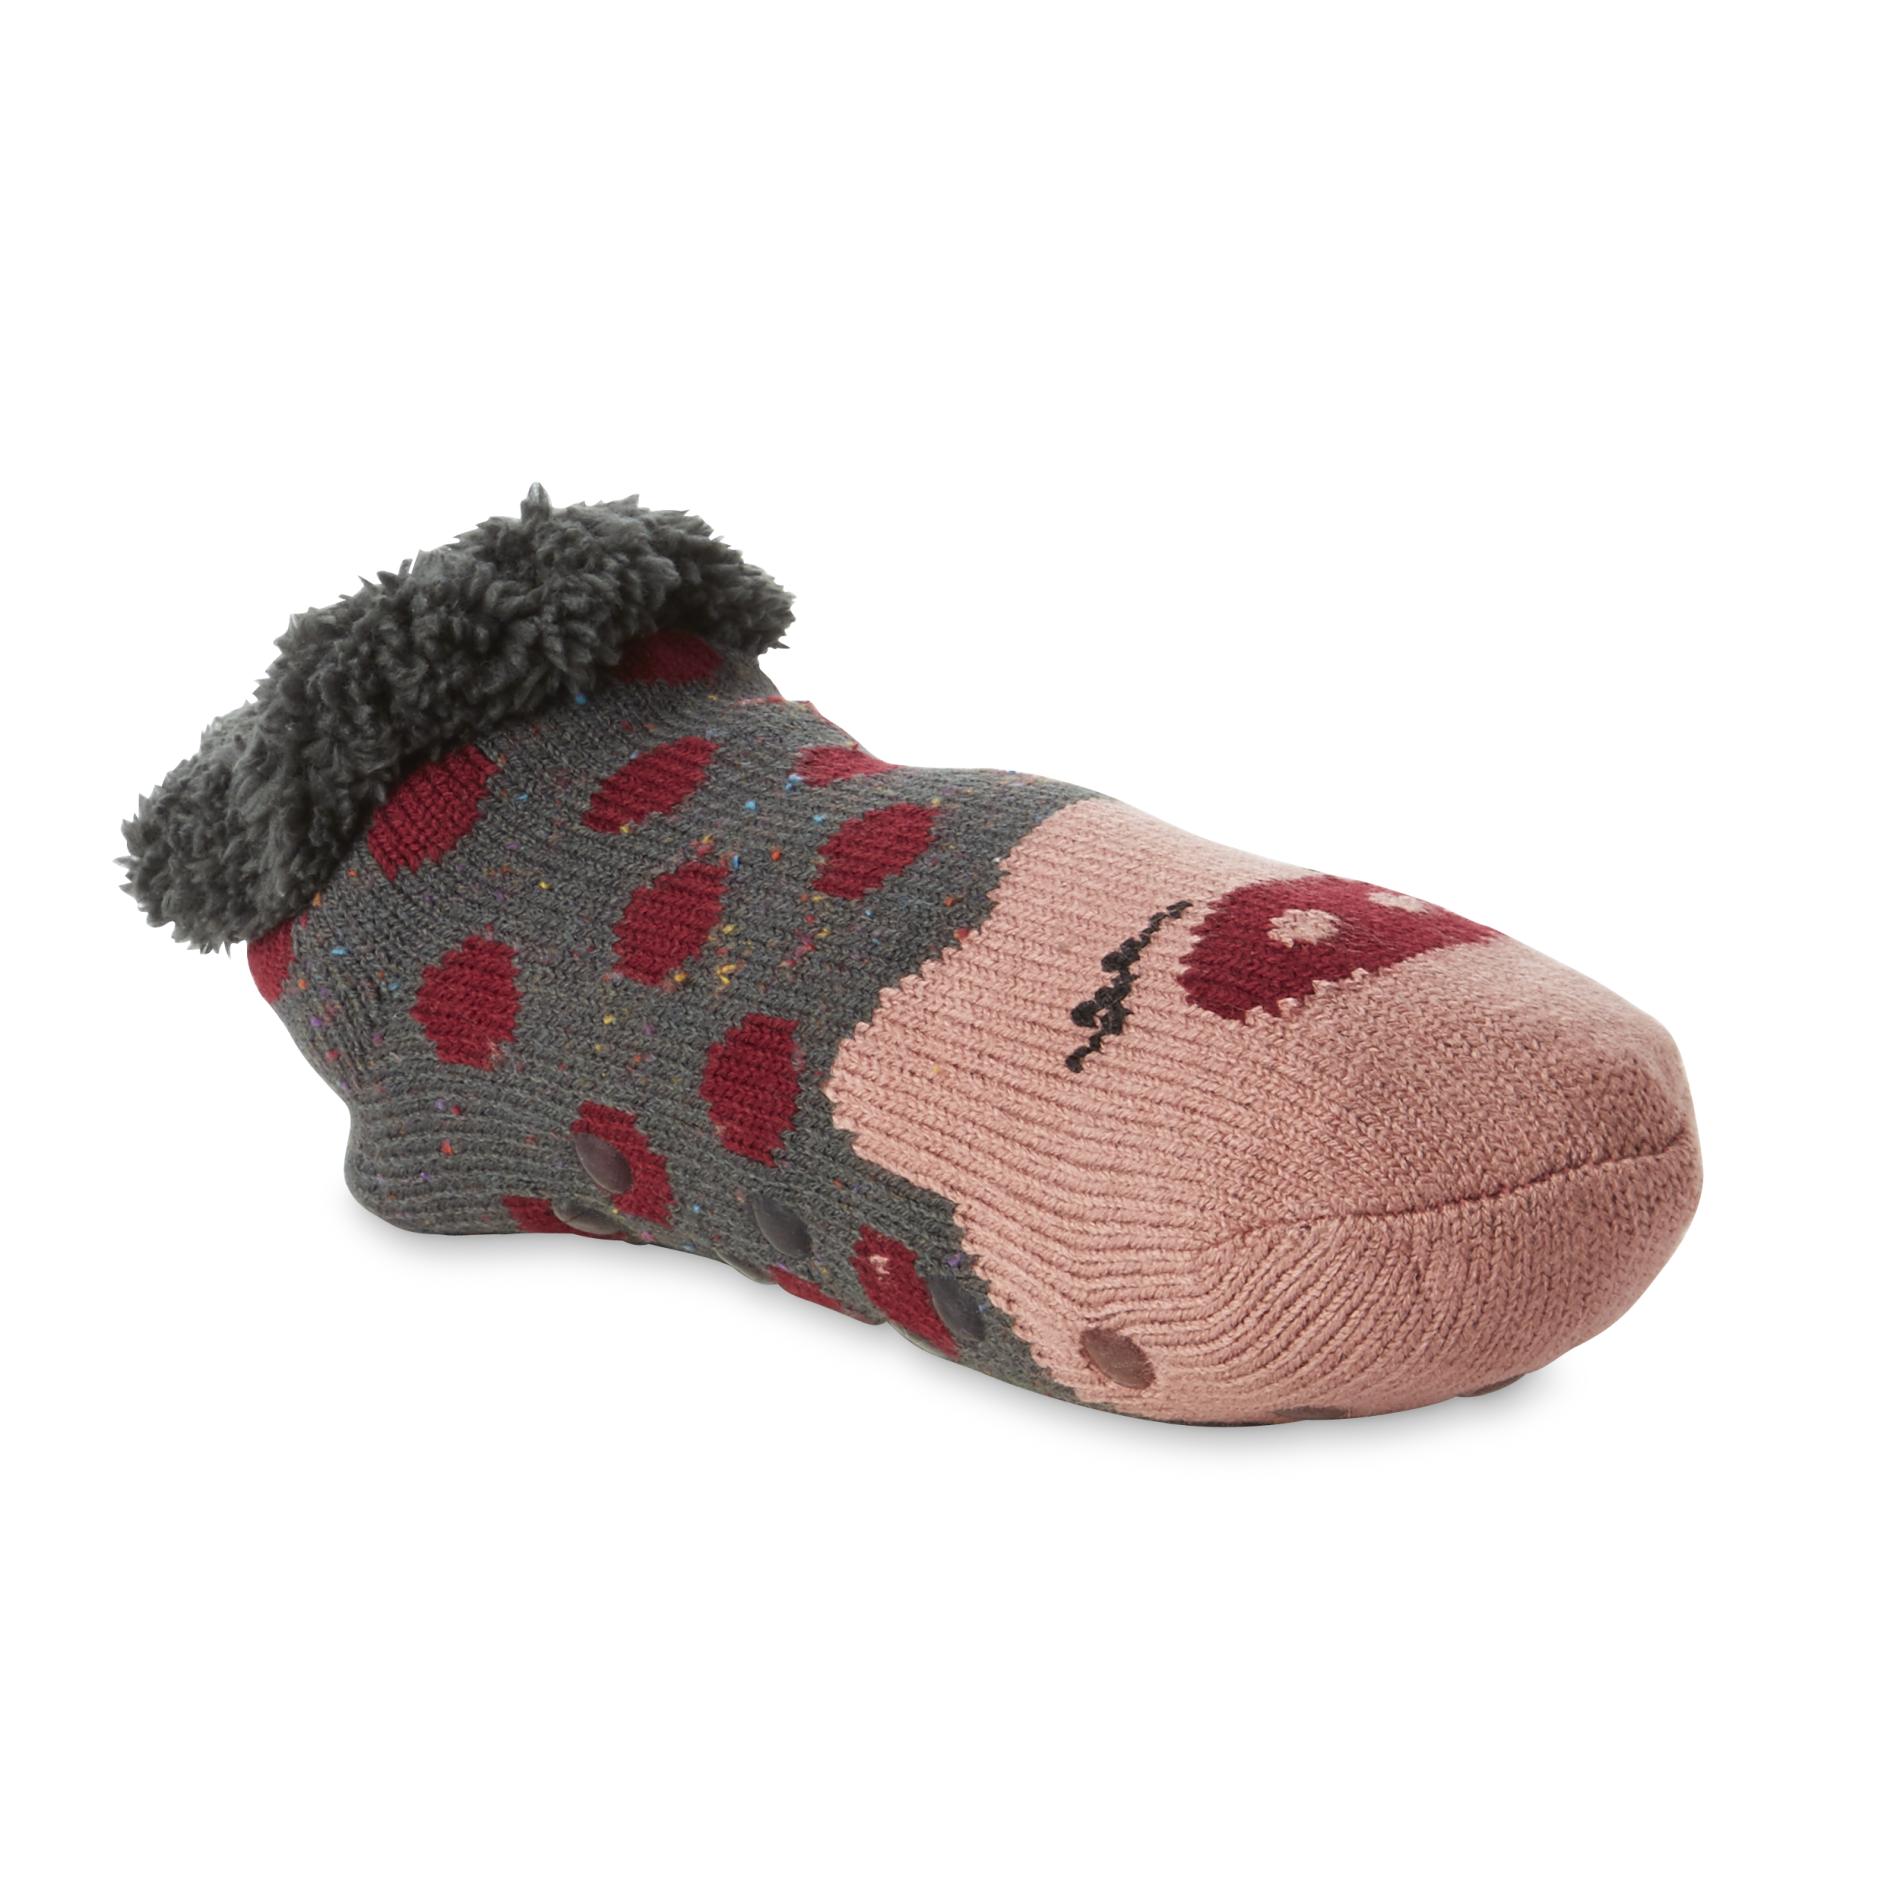 Joe Boxer Women's Cozy Slipper Socks - Pig